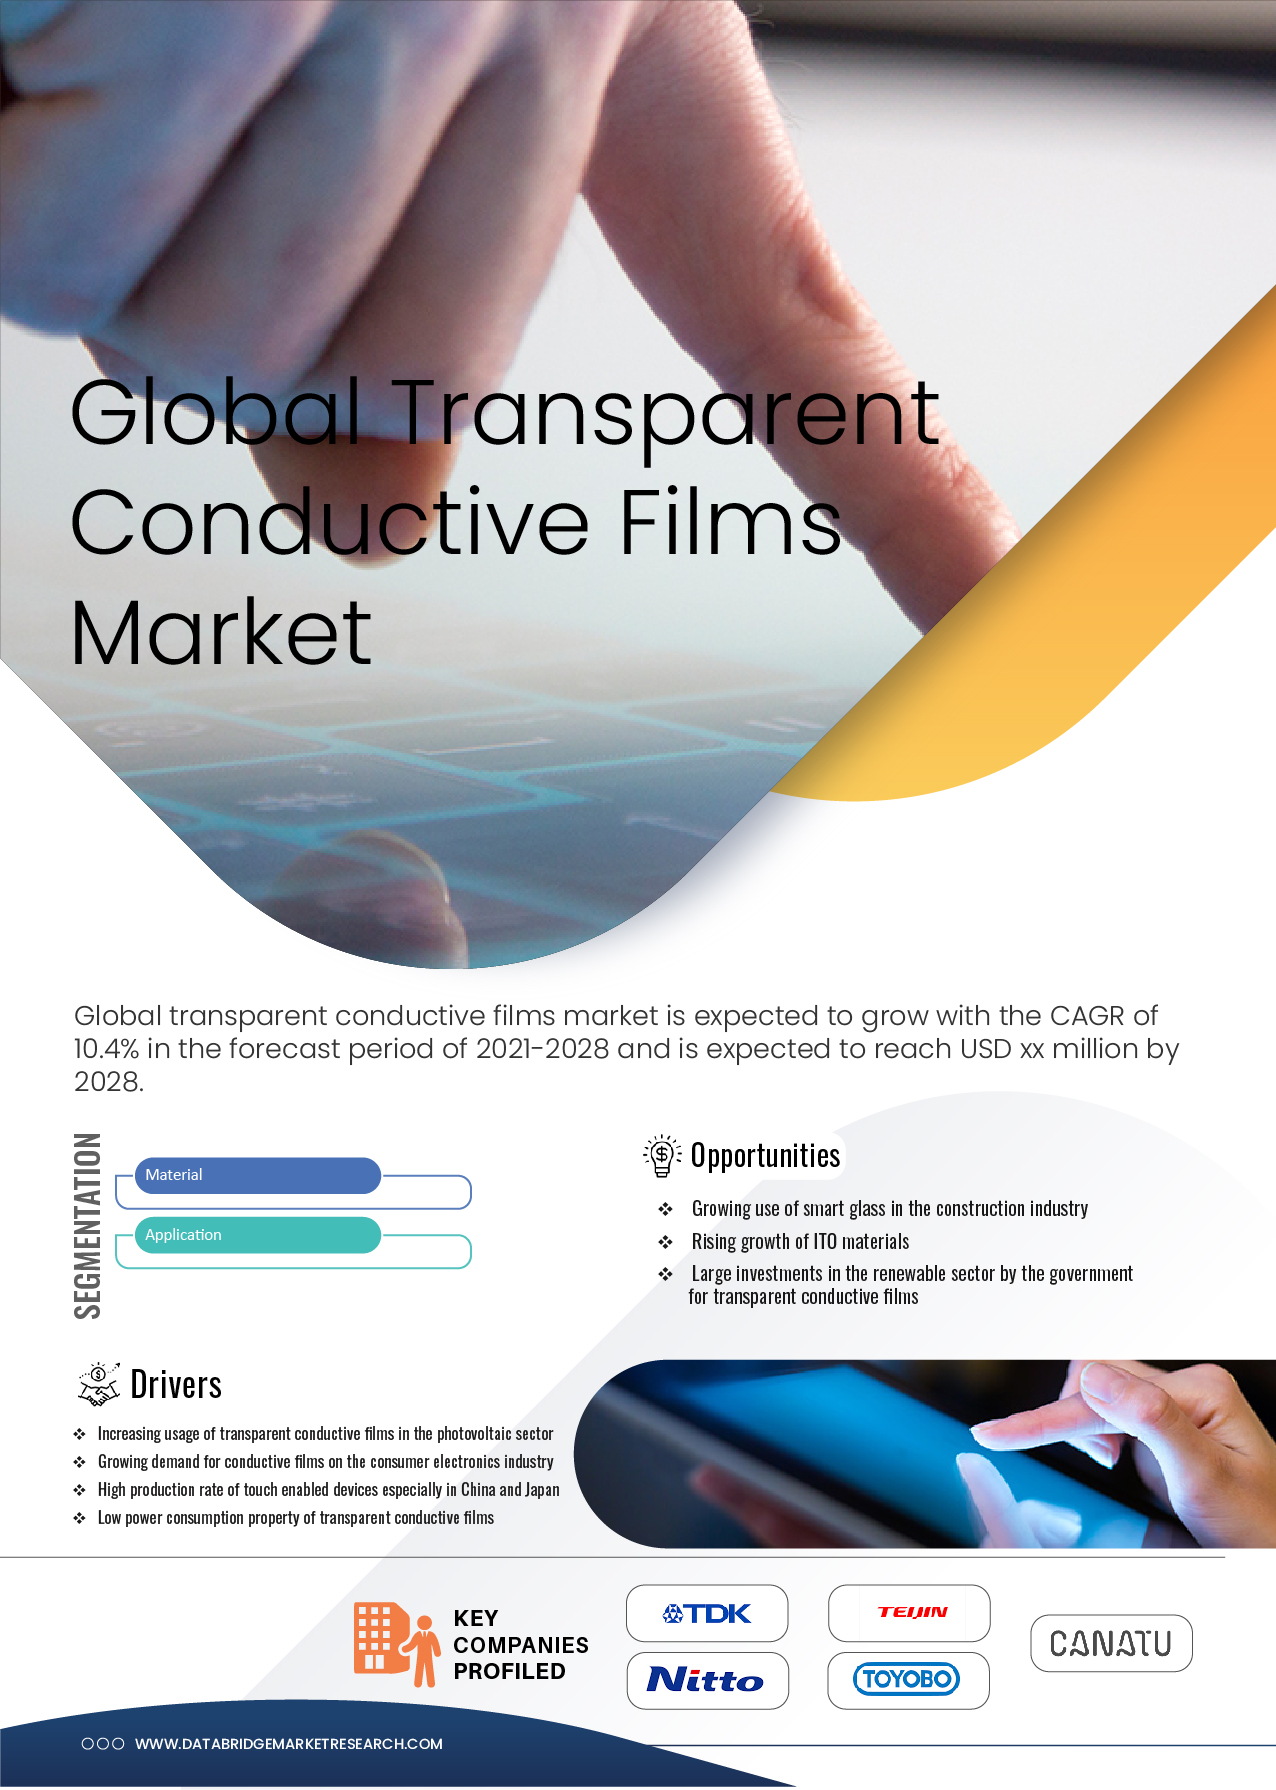 Transparent Conductive Films Market